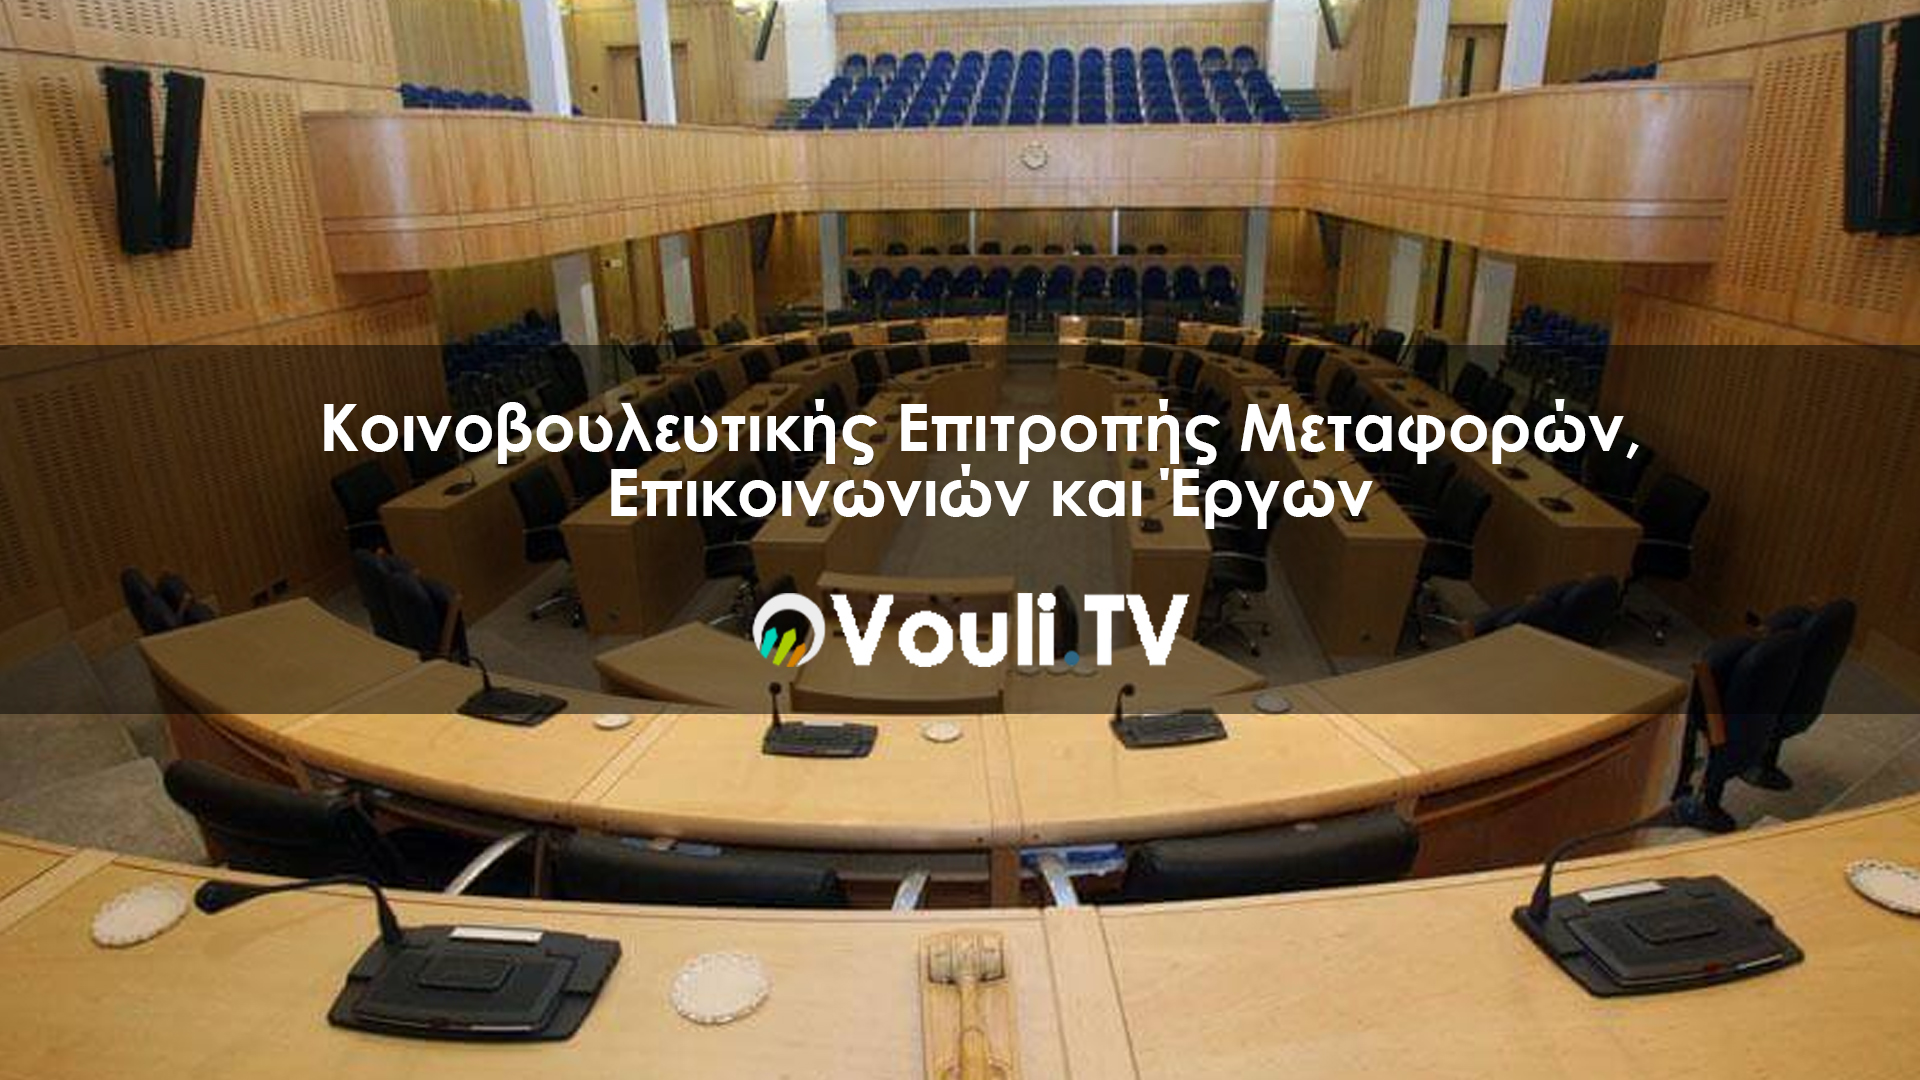 Κοινοβουλευτική Επιτροπή Μεταφορών, Επικοινωνιών και Έργων | Vouli report - 10/12/2020